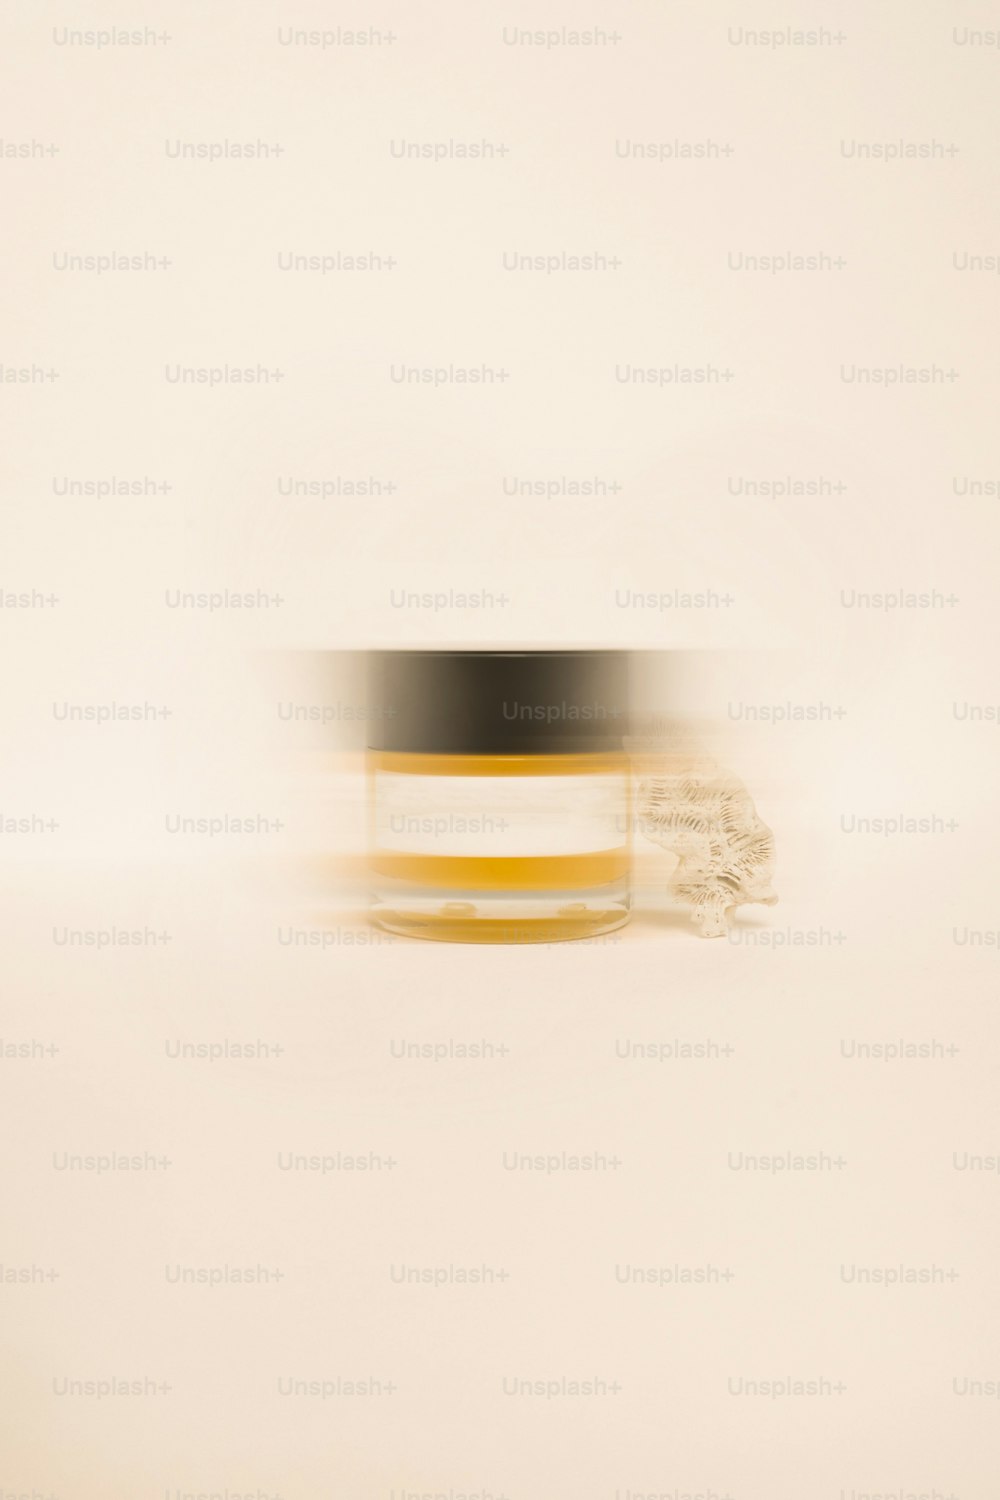 a blurry photo of a jar of cream